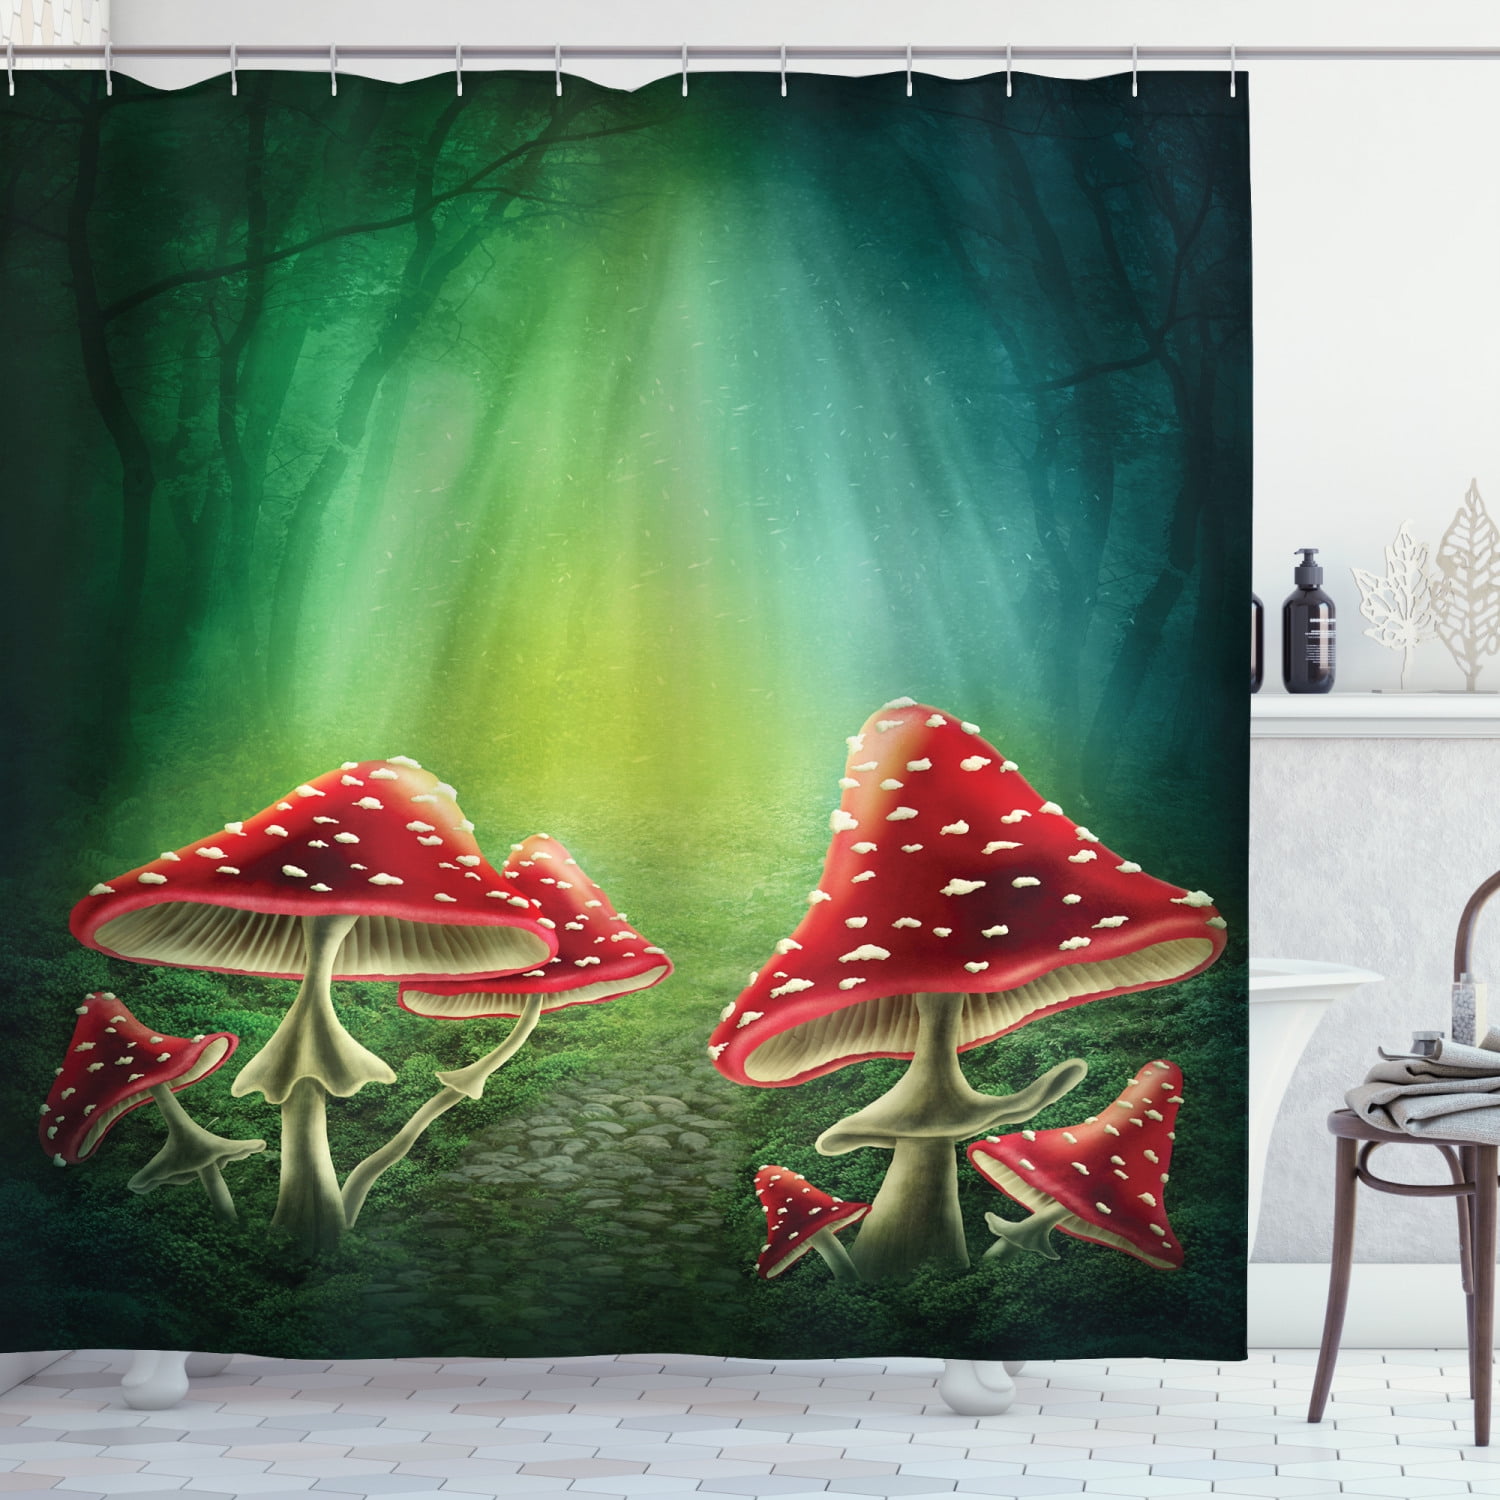 Fairy Tale World Castle Mushroom Forest Fabric Shower Curtain Set Bathroom Decor 